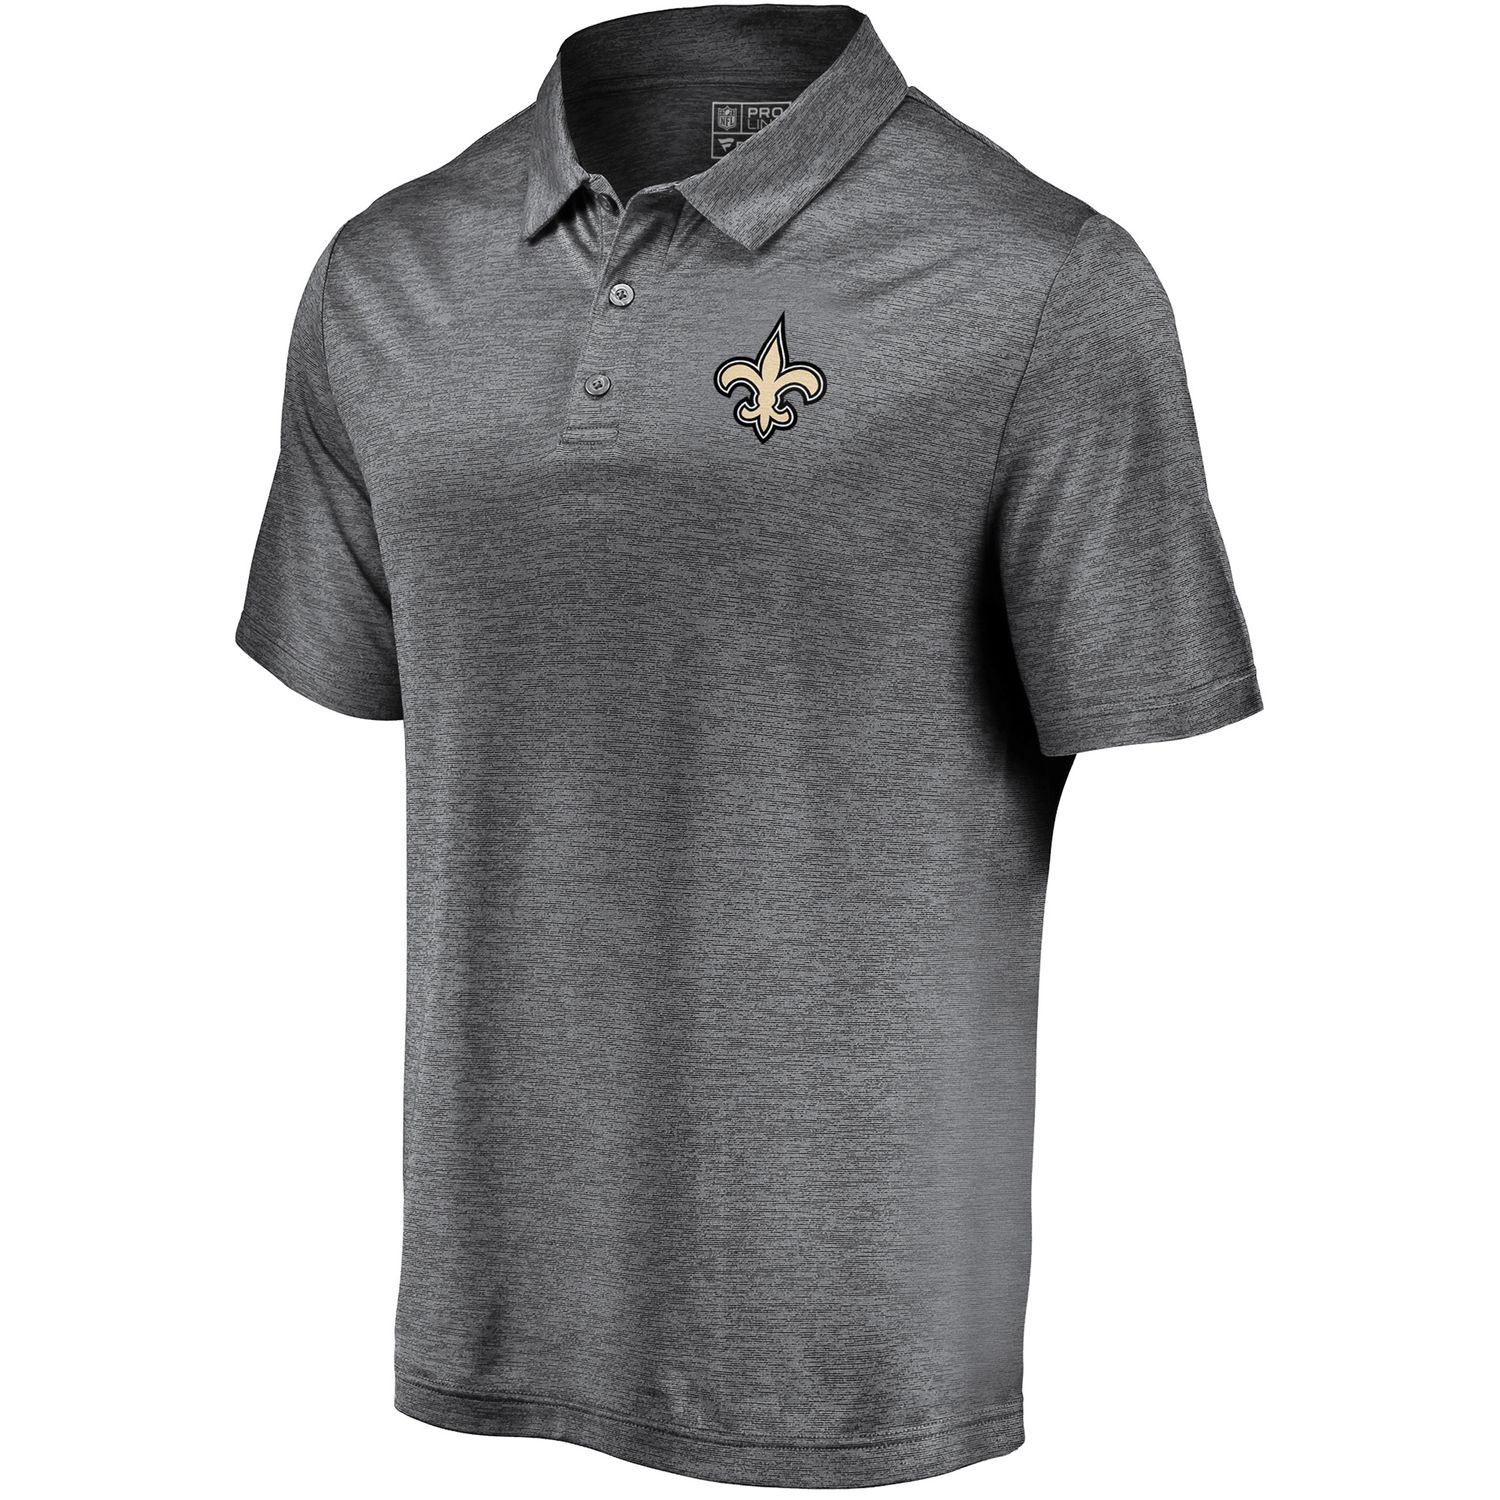 new orleans saints men's polo shirt